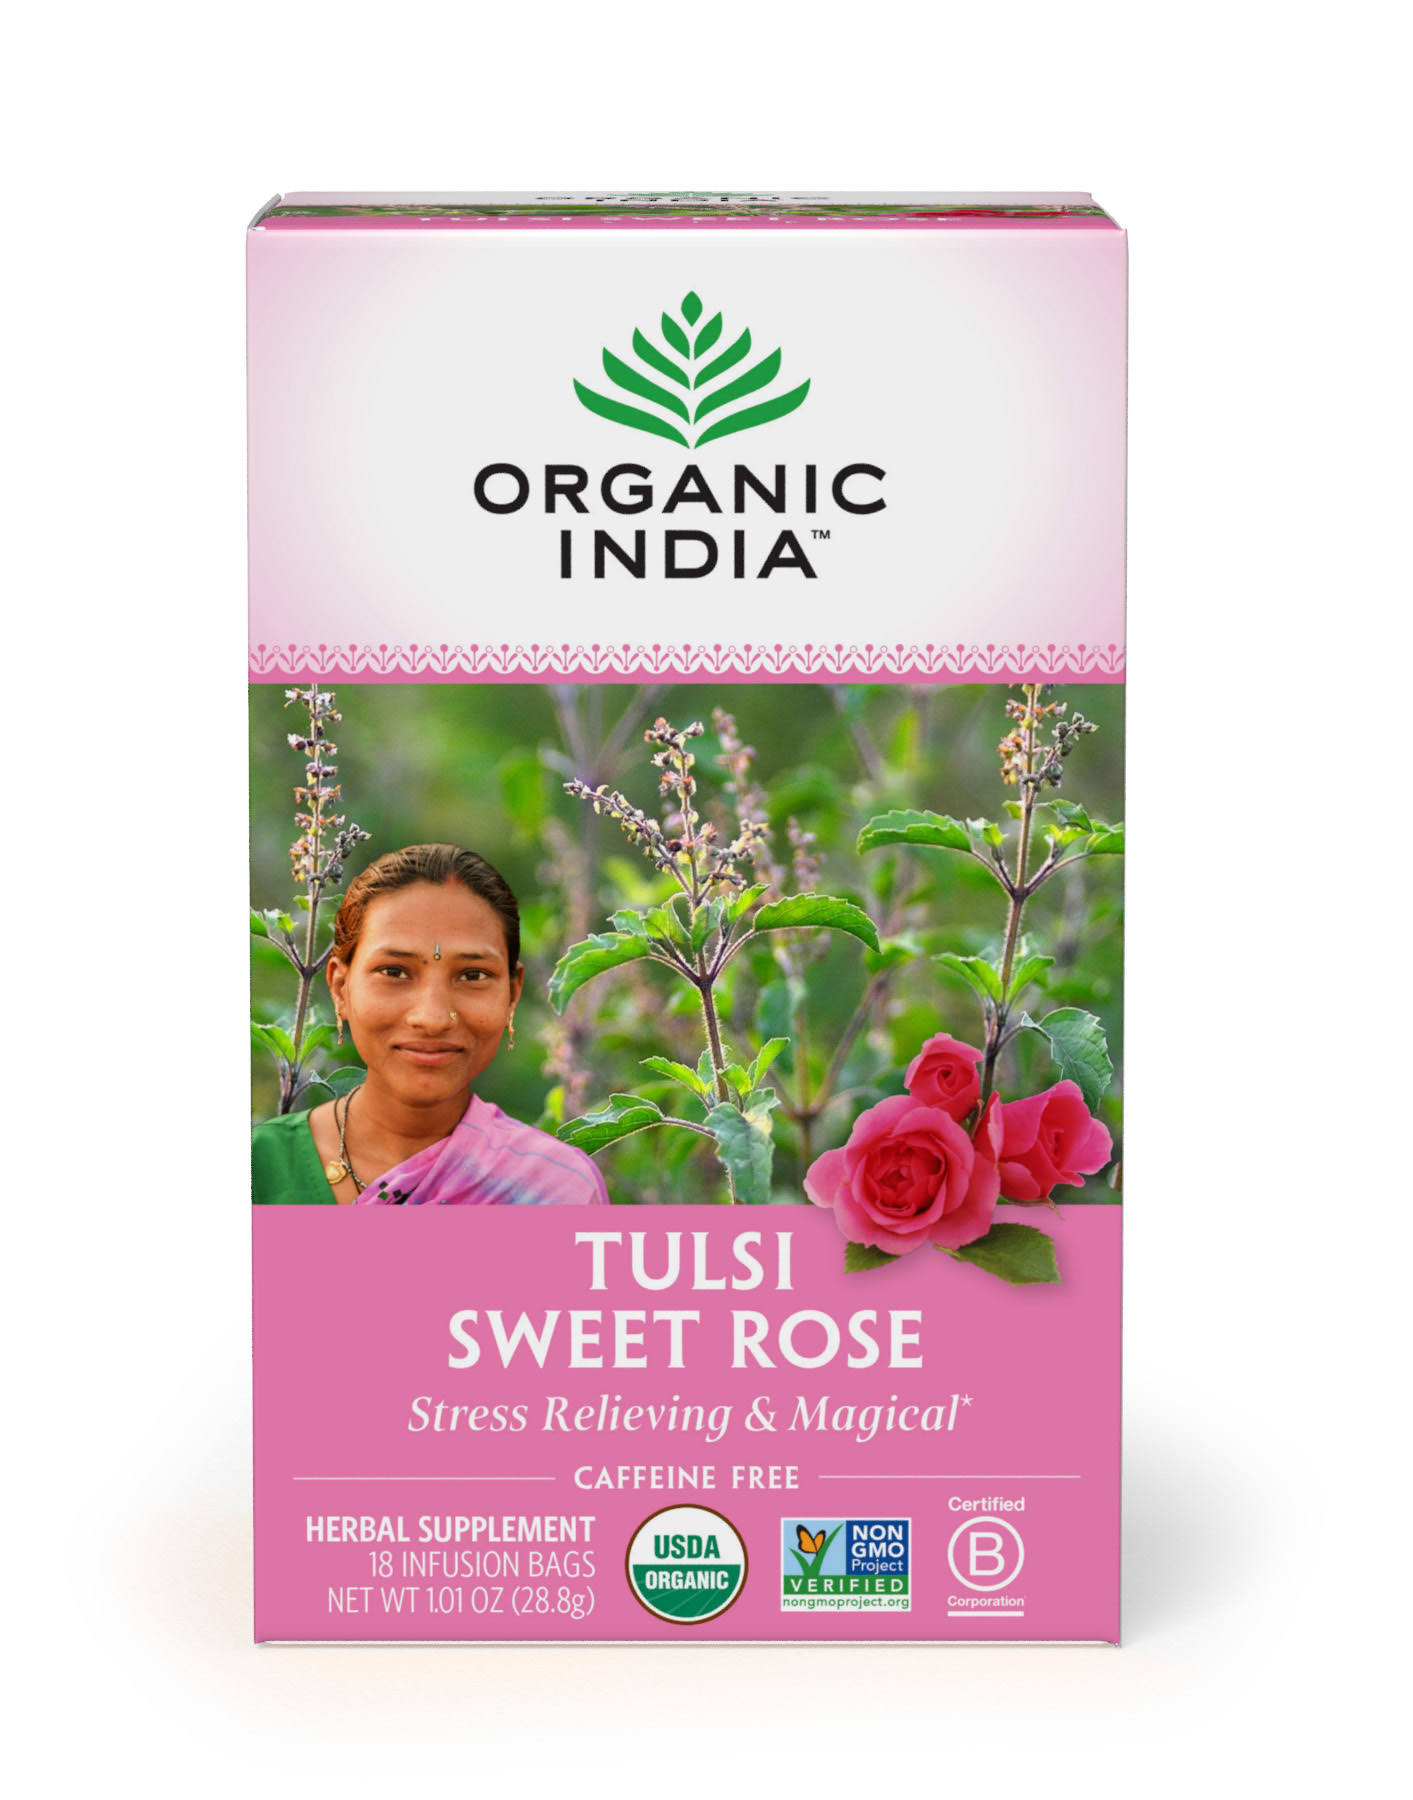 Organic India Organic Tulsi Herbal Tea - Sweet Rose, 18 Infusion Bags, 28.8g